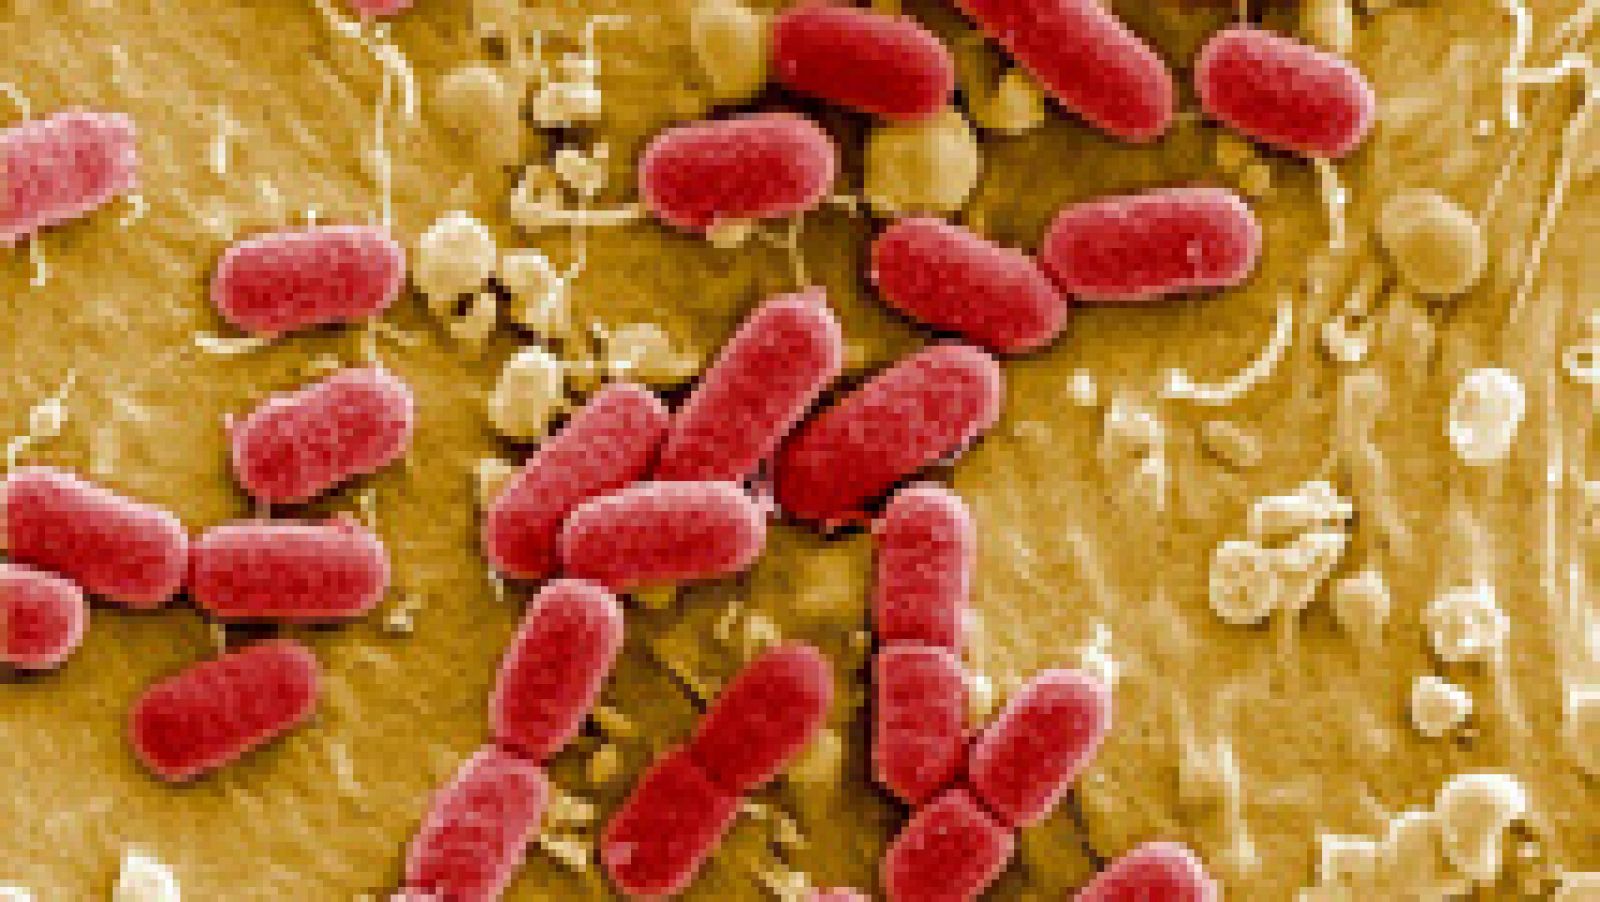 Funcionarios del sistema sanitario de Estados Unidos han reportado el primer caso de una paciente con una infección que resiste a todos los antibióticos conocidos, y han expresado su "gran preocupación" ante el grave peligro que esta superbacteria po